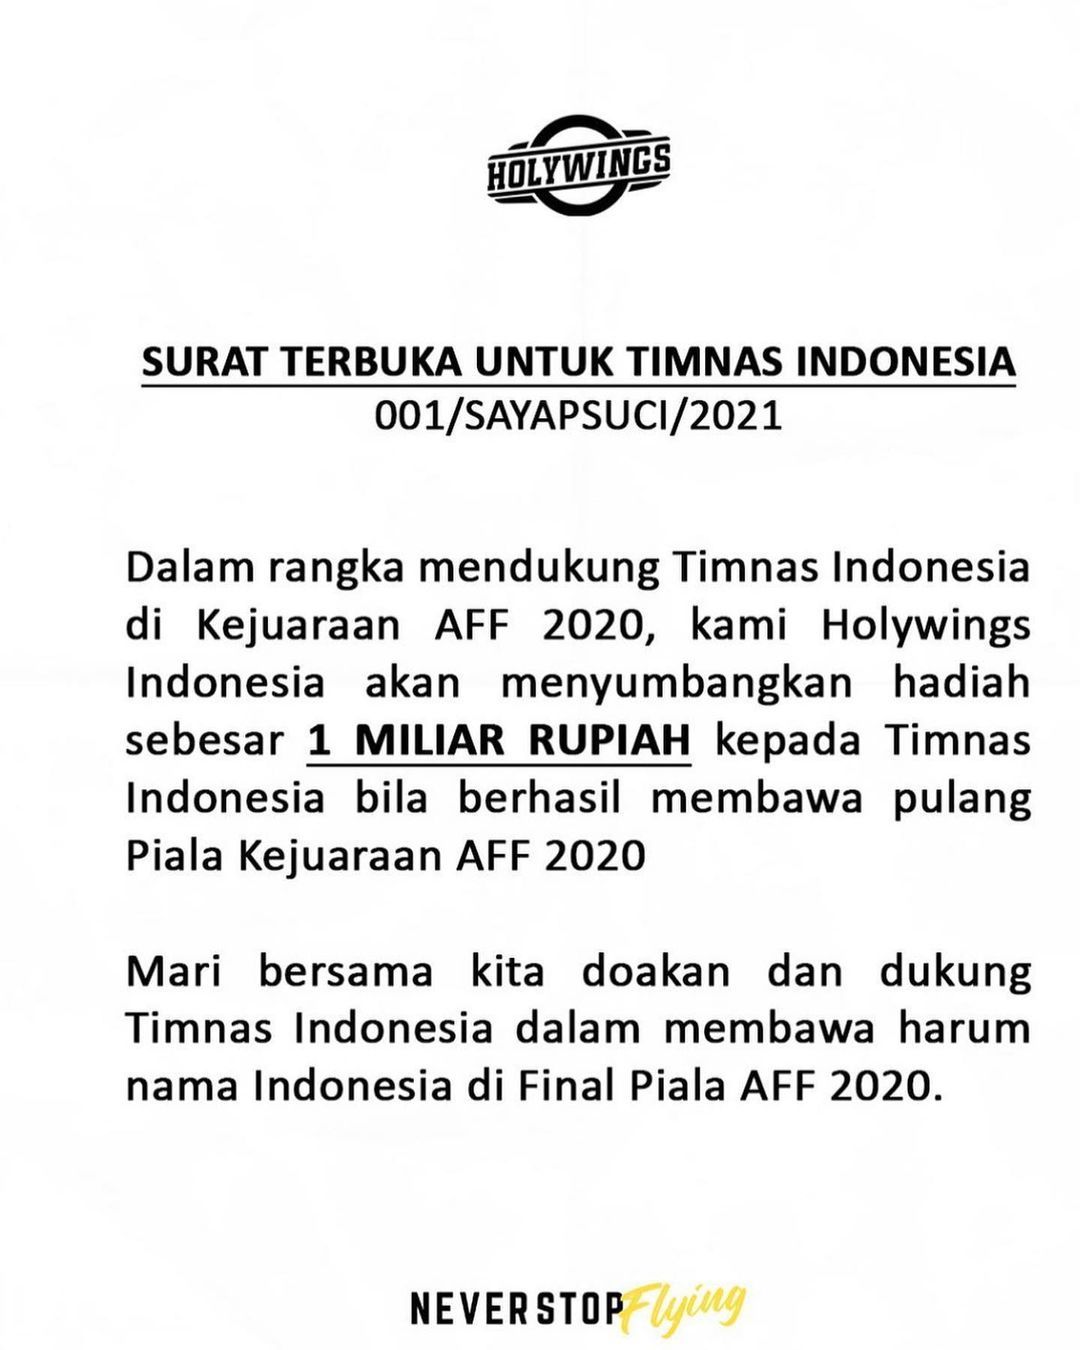 Surat Pernyataan Hadiah 1 M untuk Timnas Indonesia jika menang piala AFF 2020